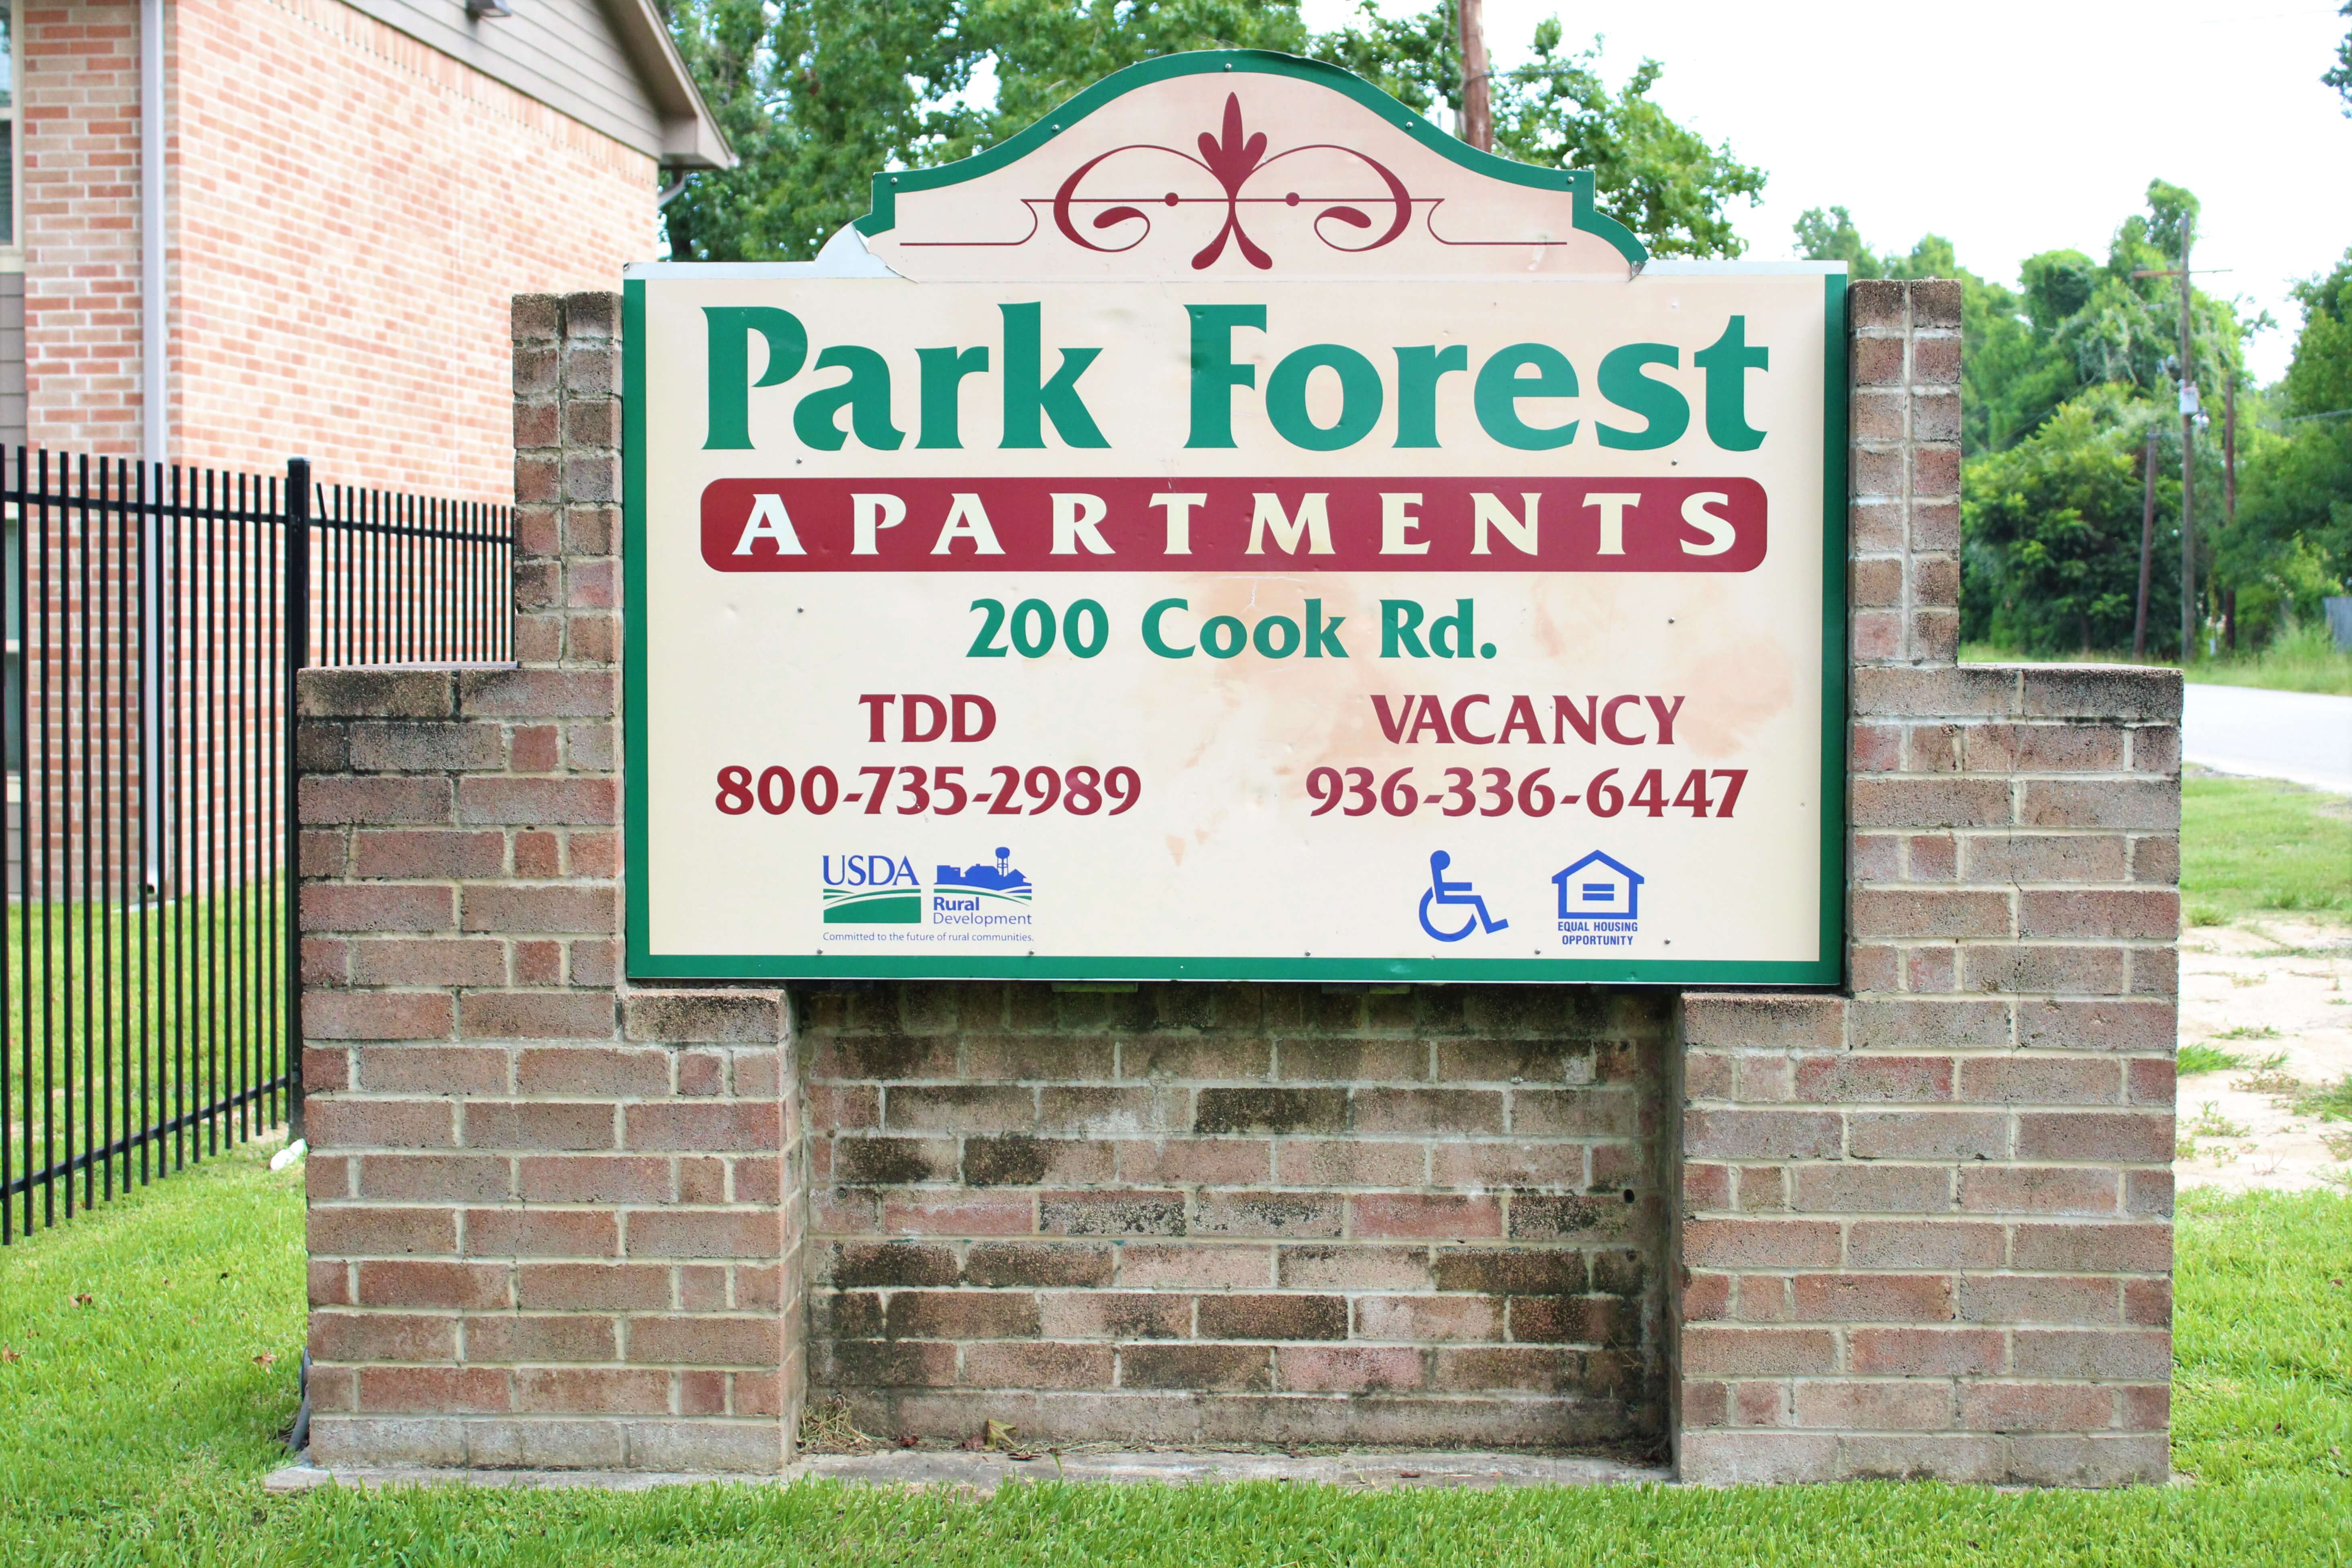 PARK FOREST APARTMENTS